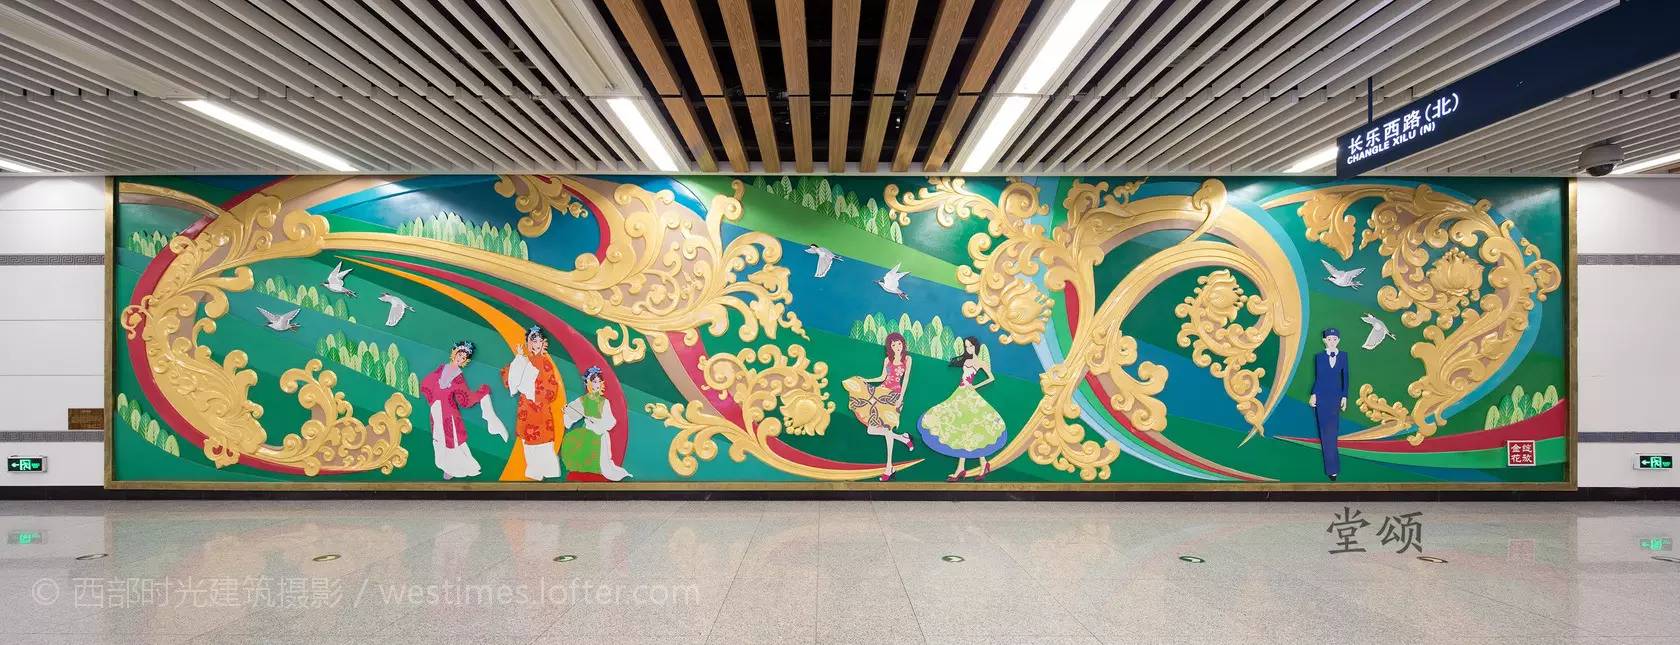 如何看待西安地铁壁画唐僧朝印度泰姬陵取经